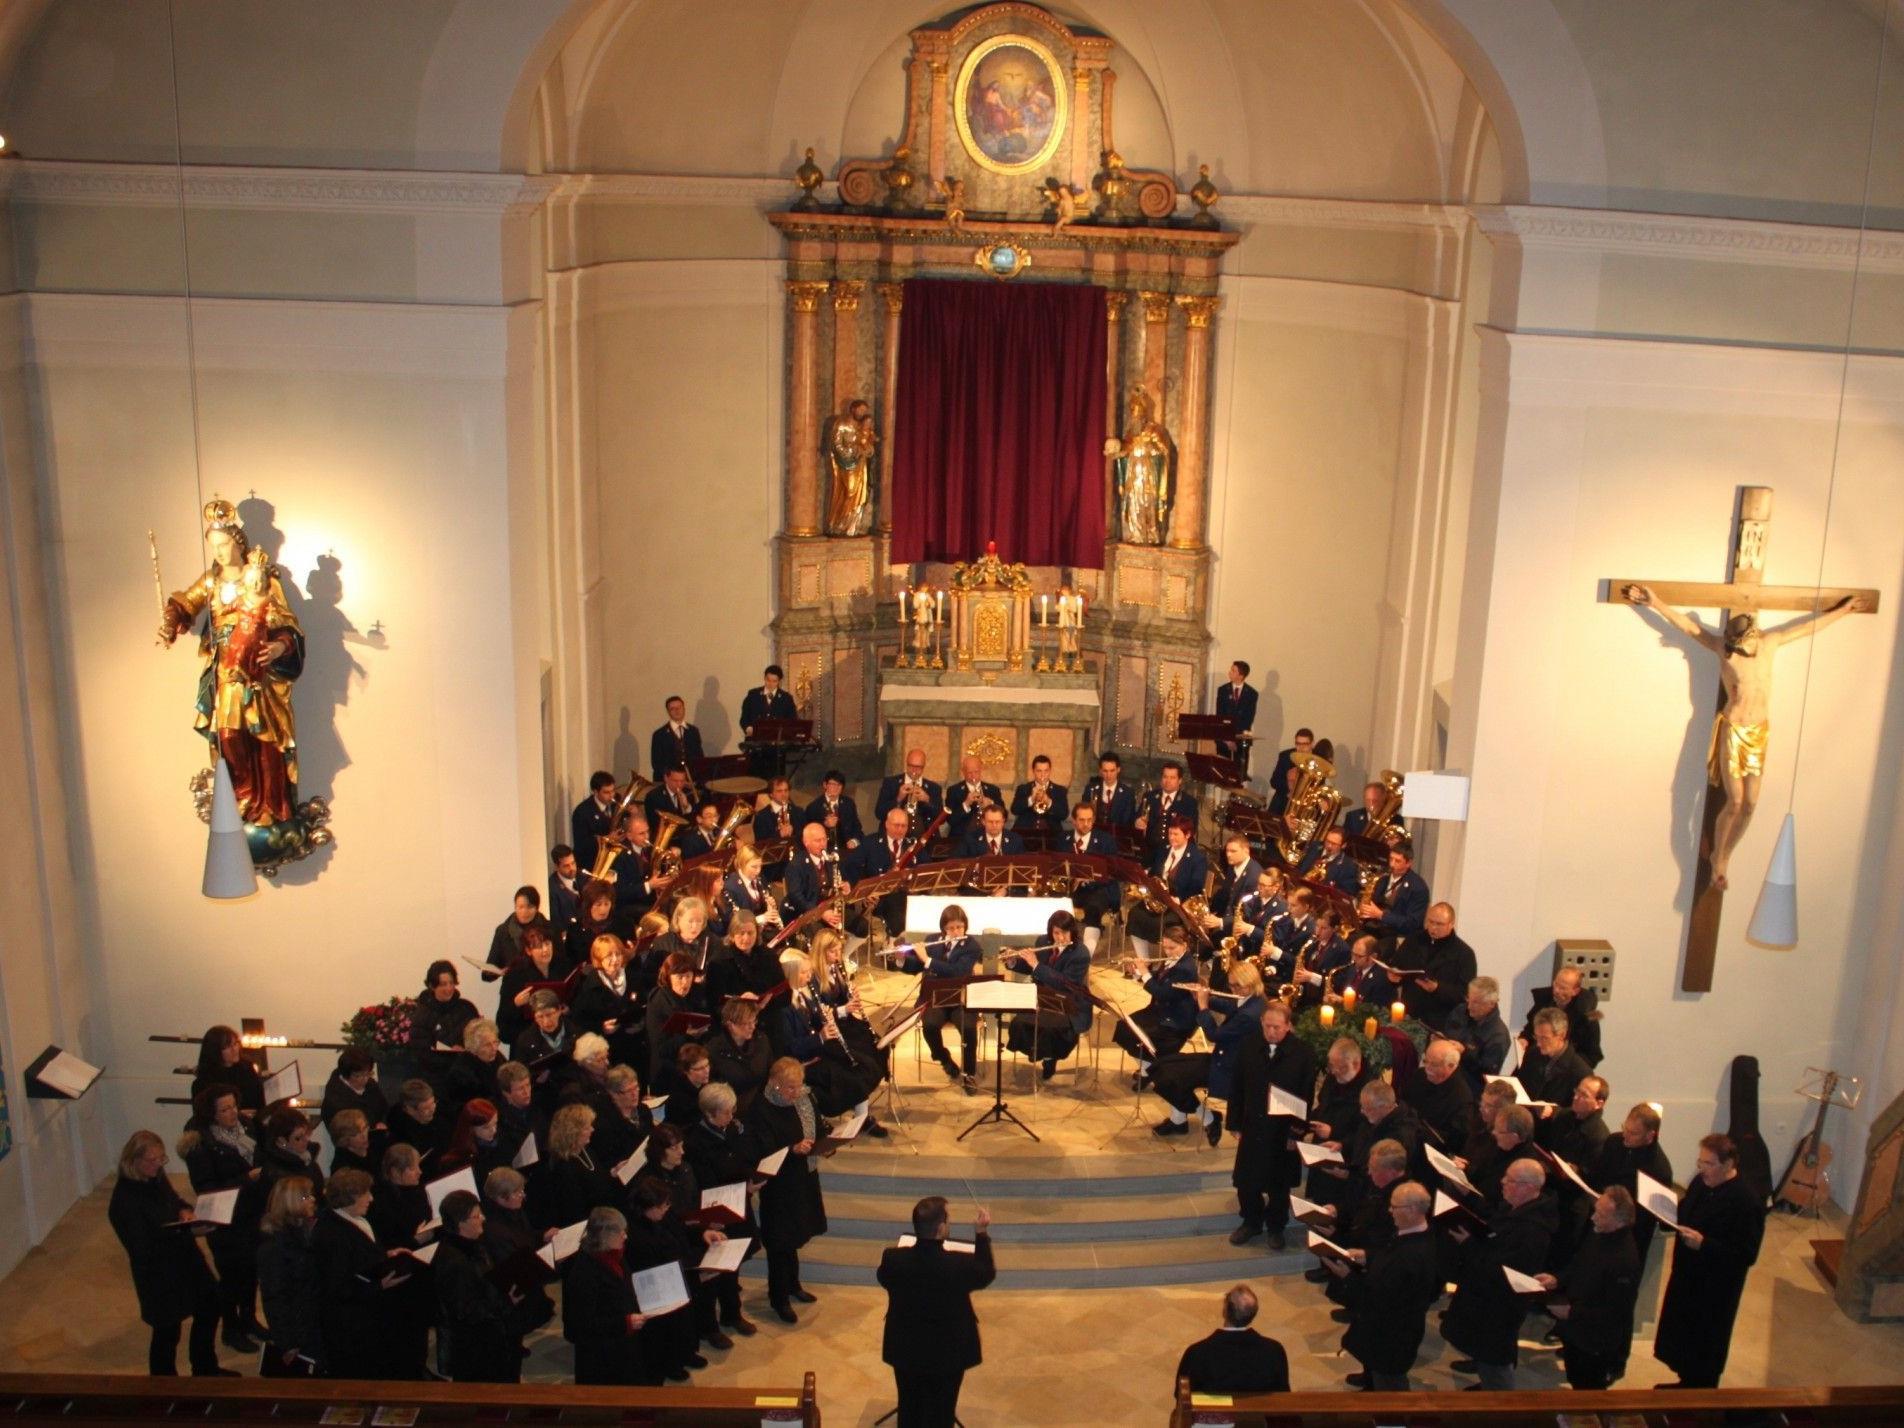 Kirchenkonzert mit dem Musikverein Lochau und den Chören des Liederkranzes Kißlegg im stimmungsvollen Ambiente der Pfarrkirche.